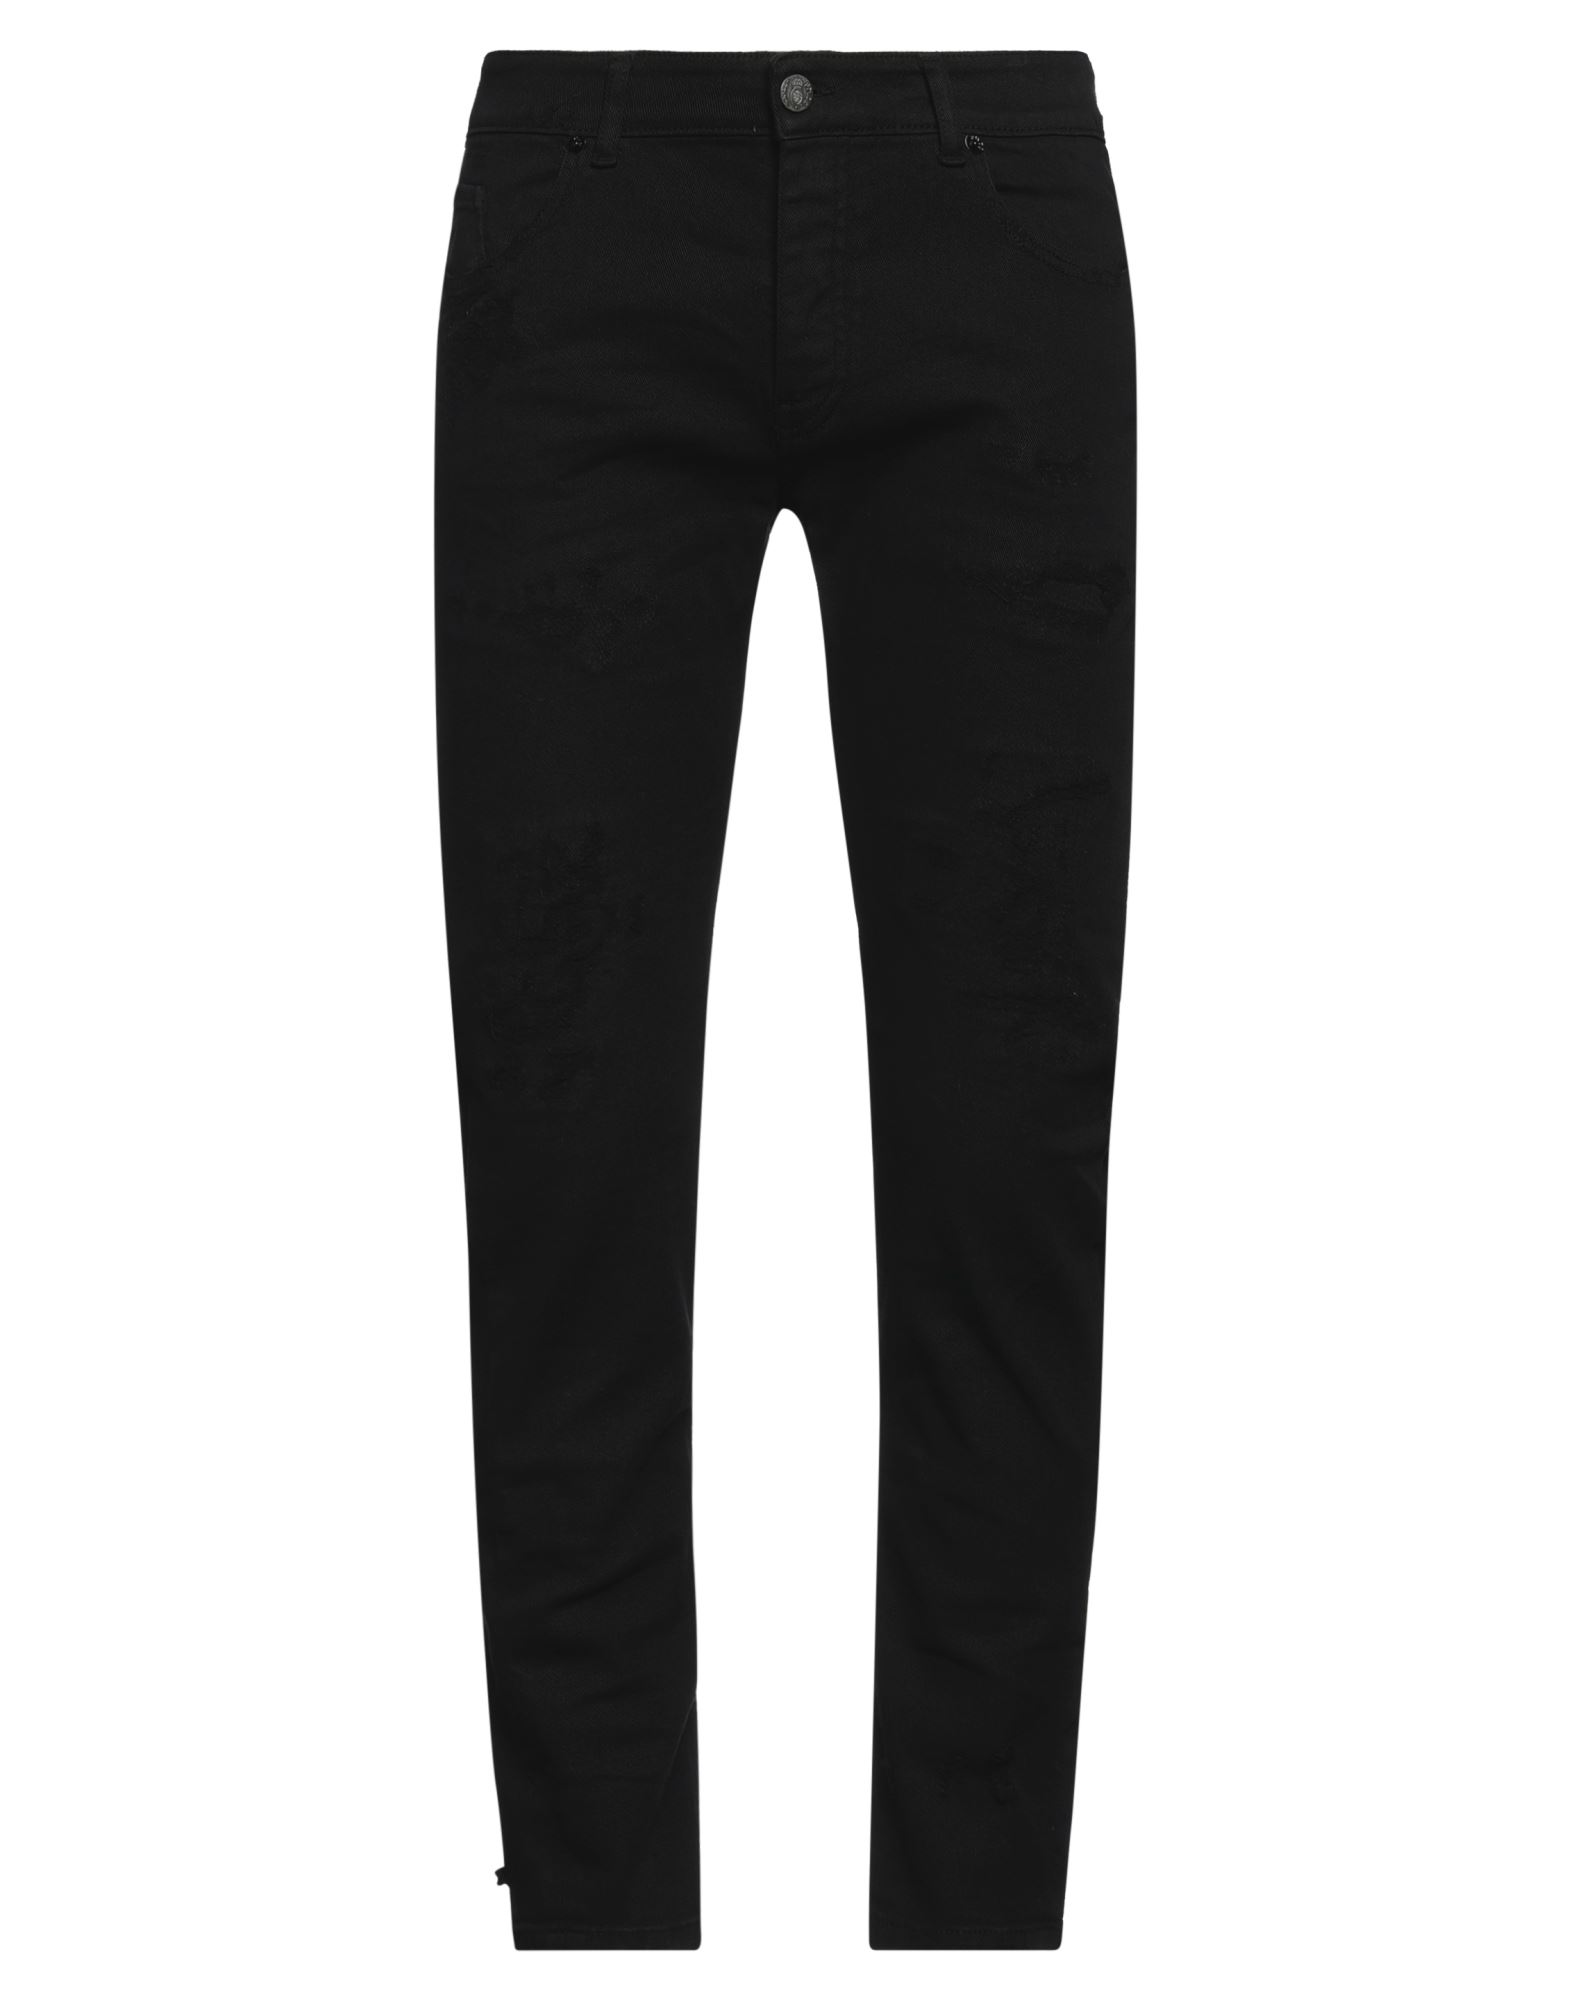 Pmds Premium Mood Denim Superior Jeans In Black